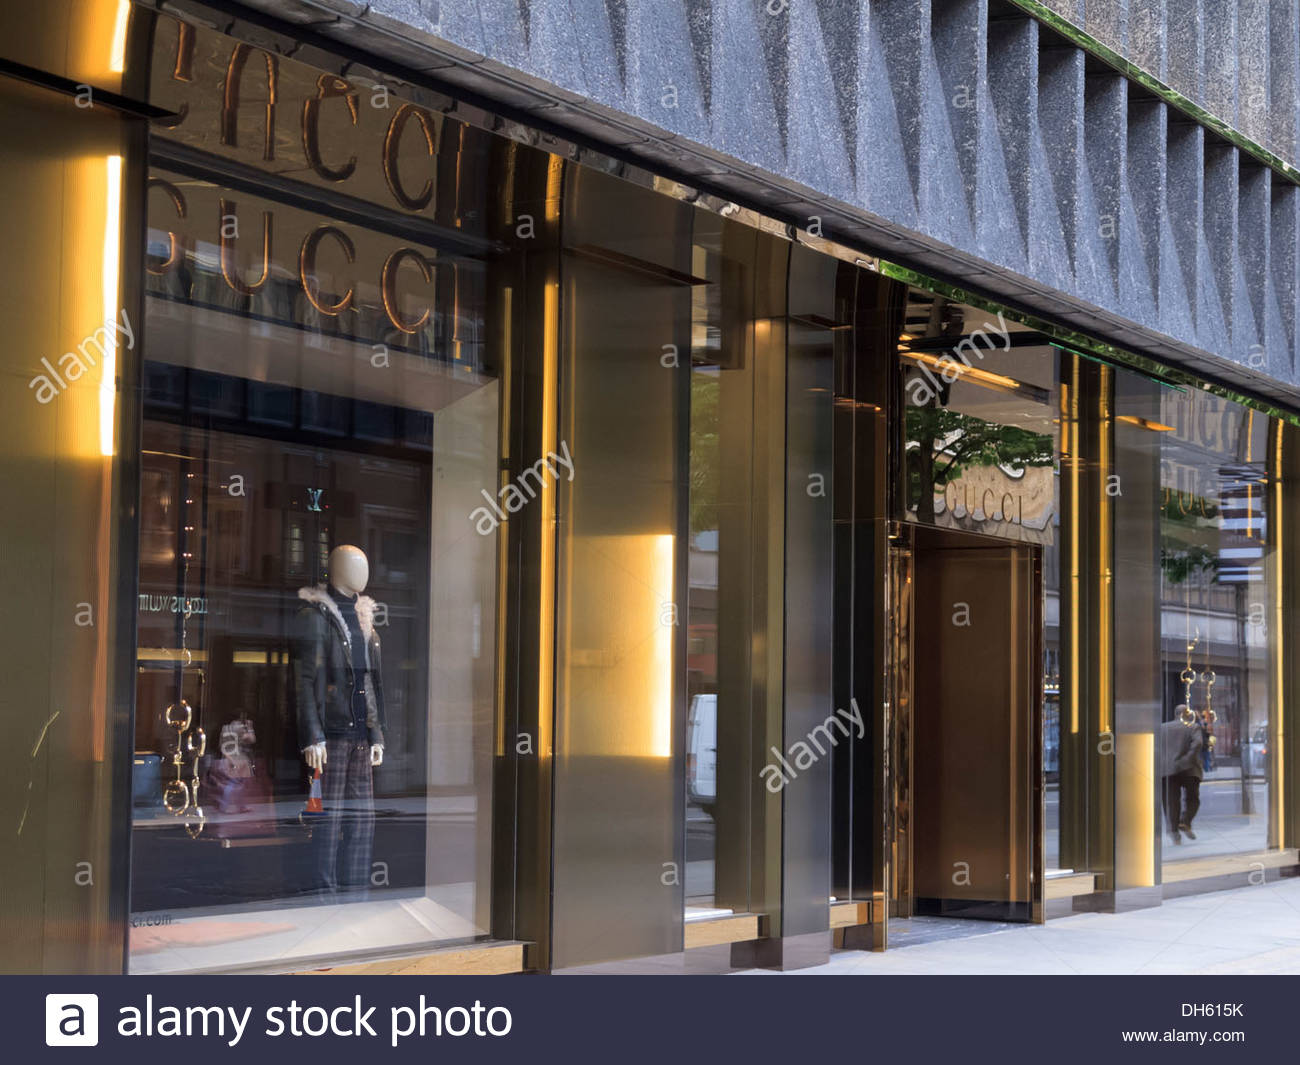 Gucci London Banque d'image et photos 